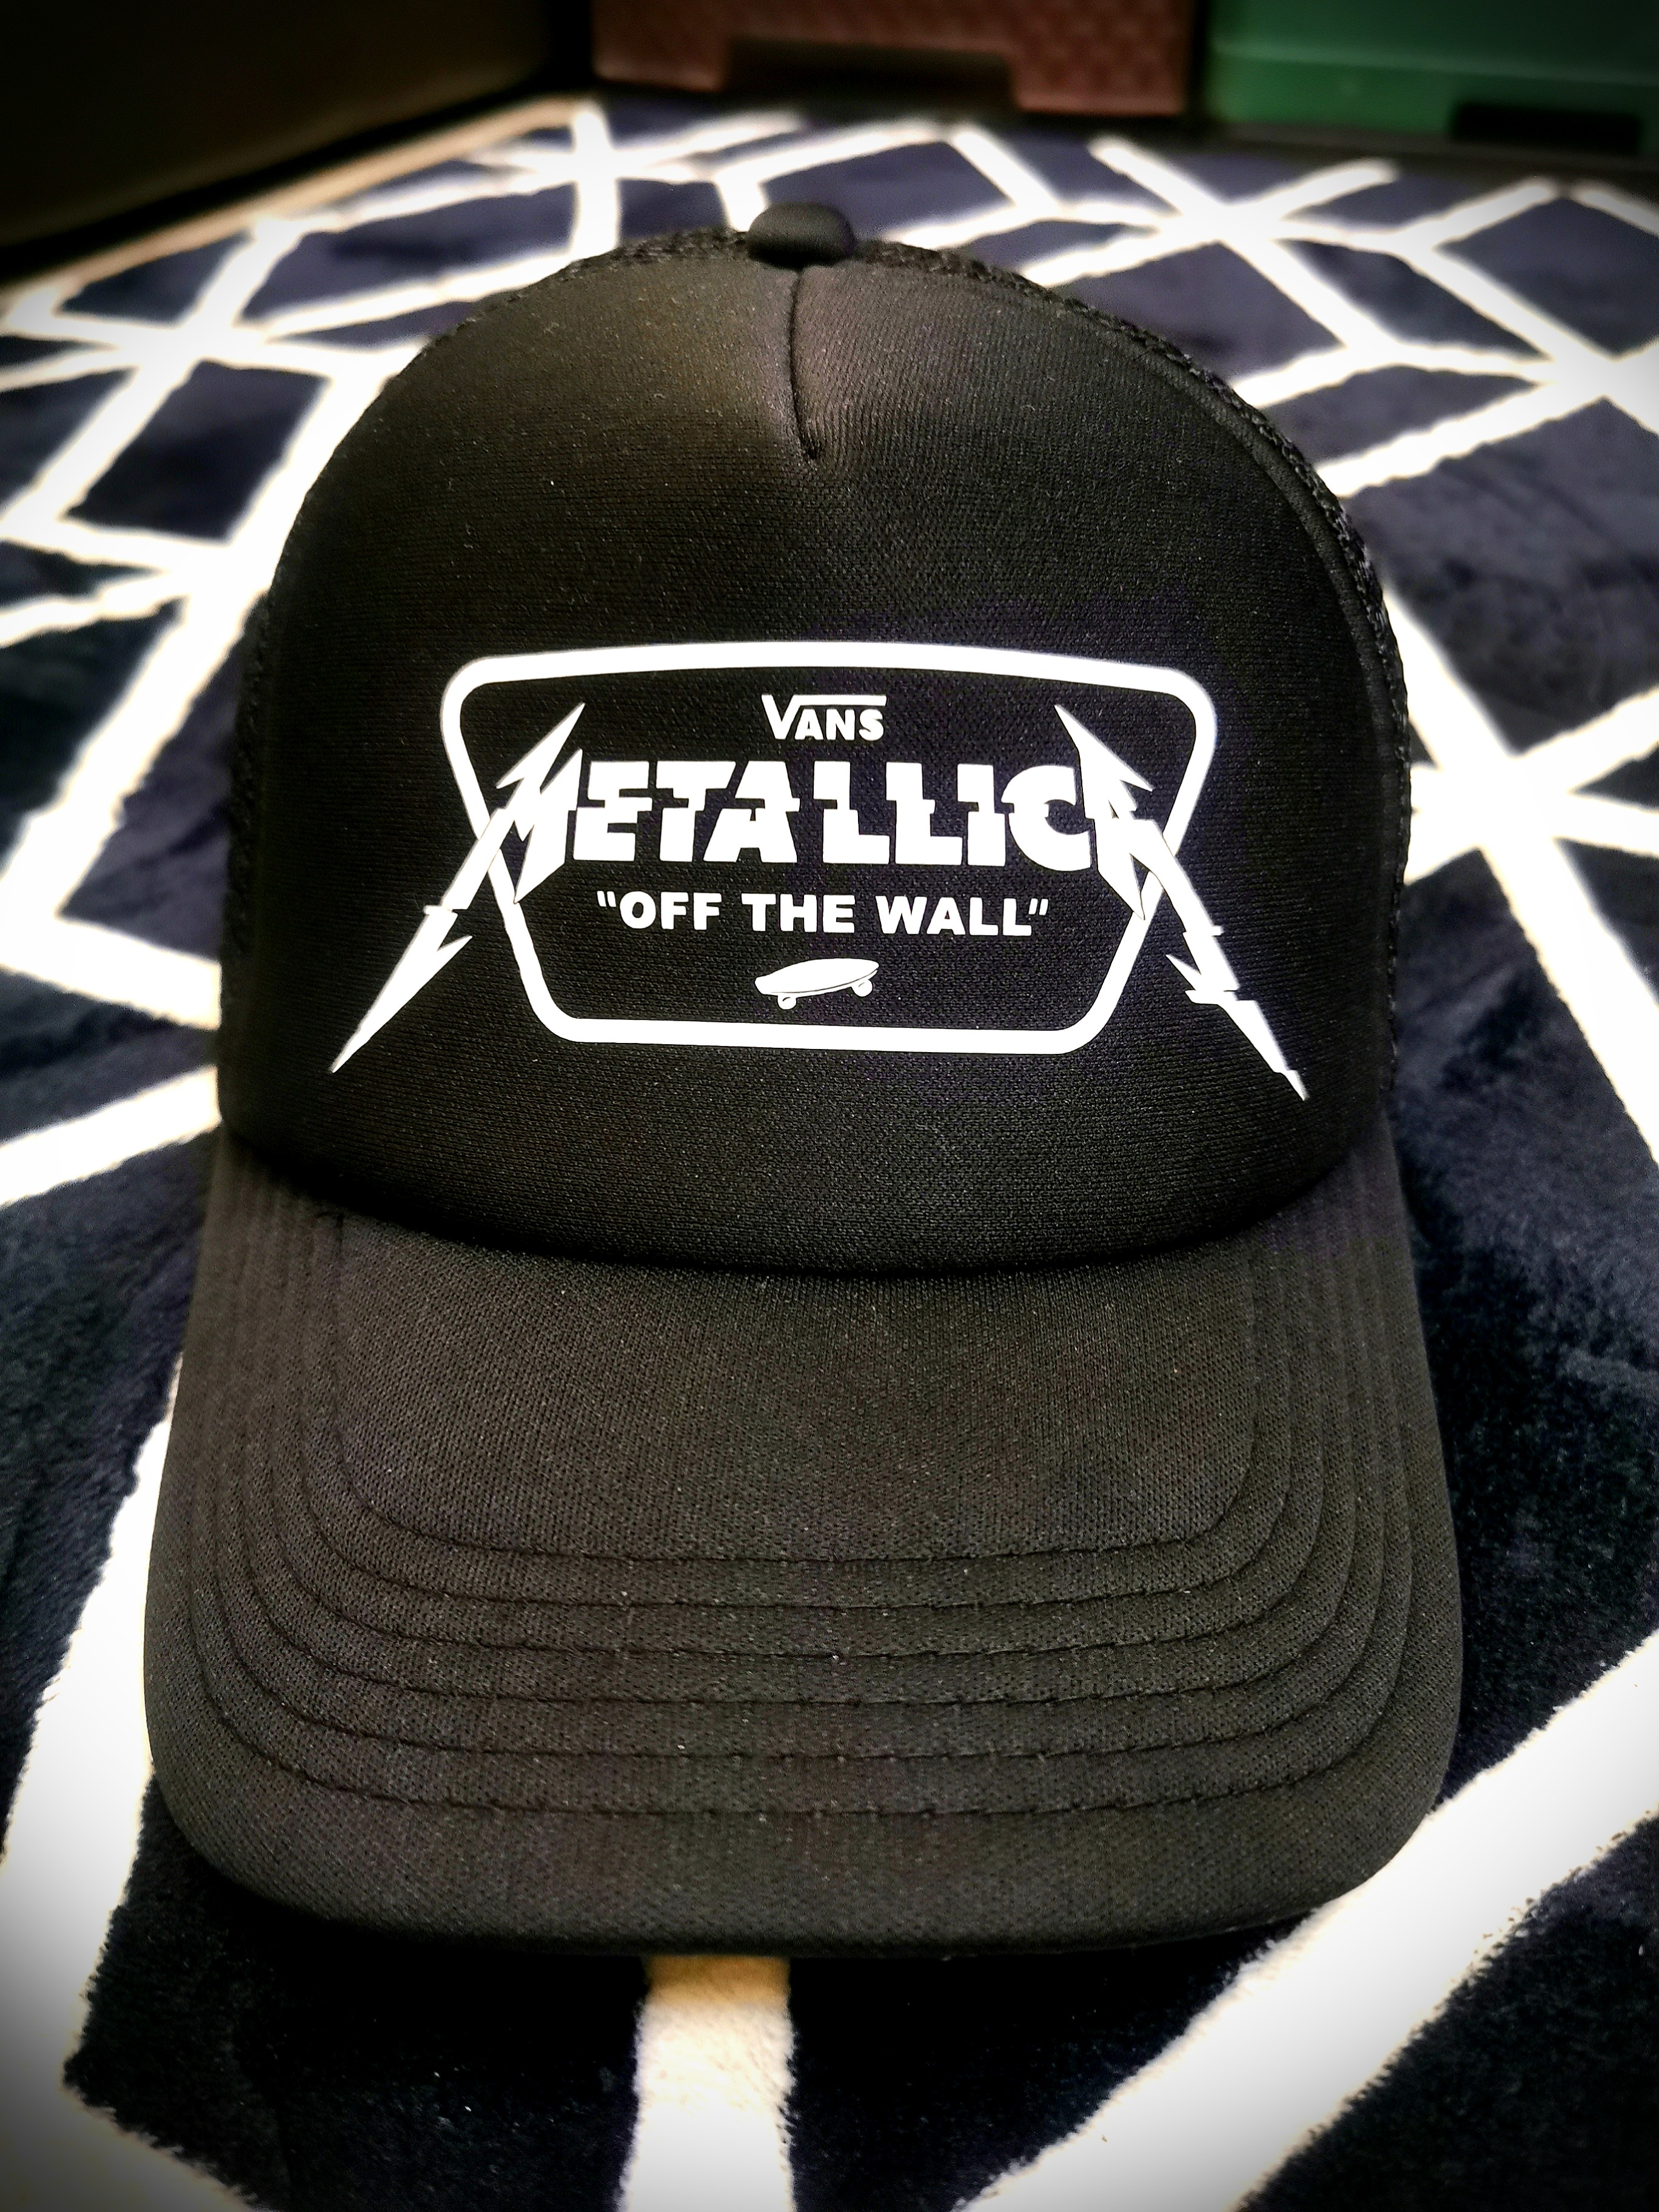 Vans Metallica Trucker Cap, Men's 